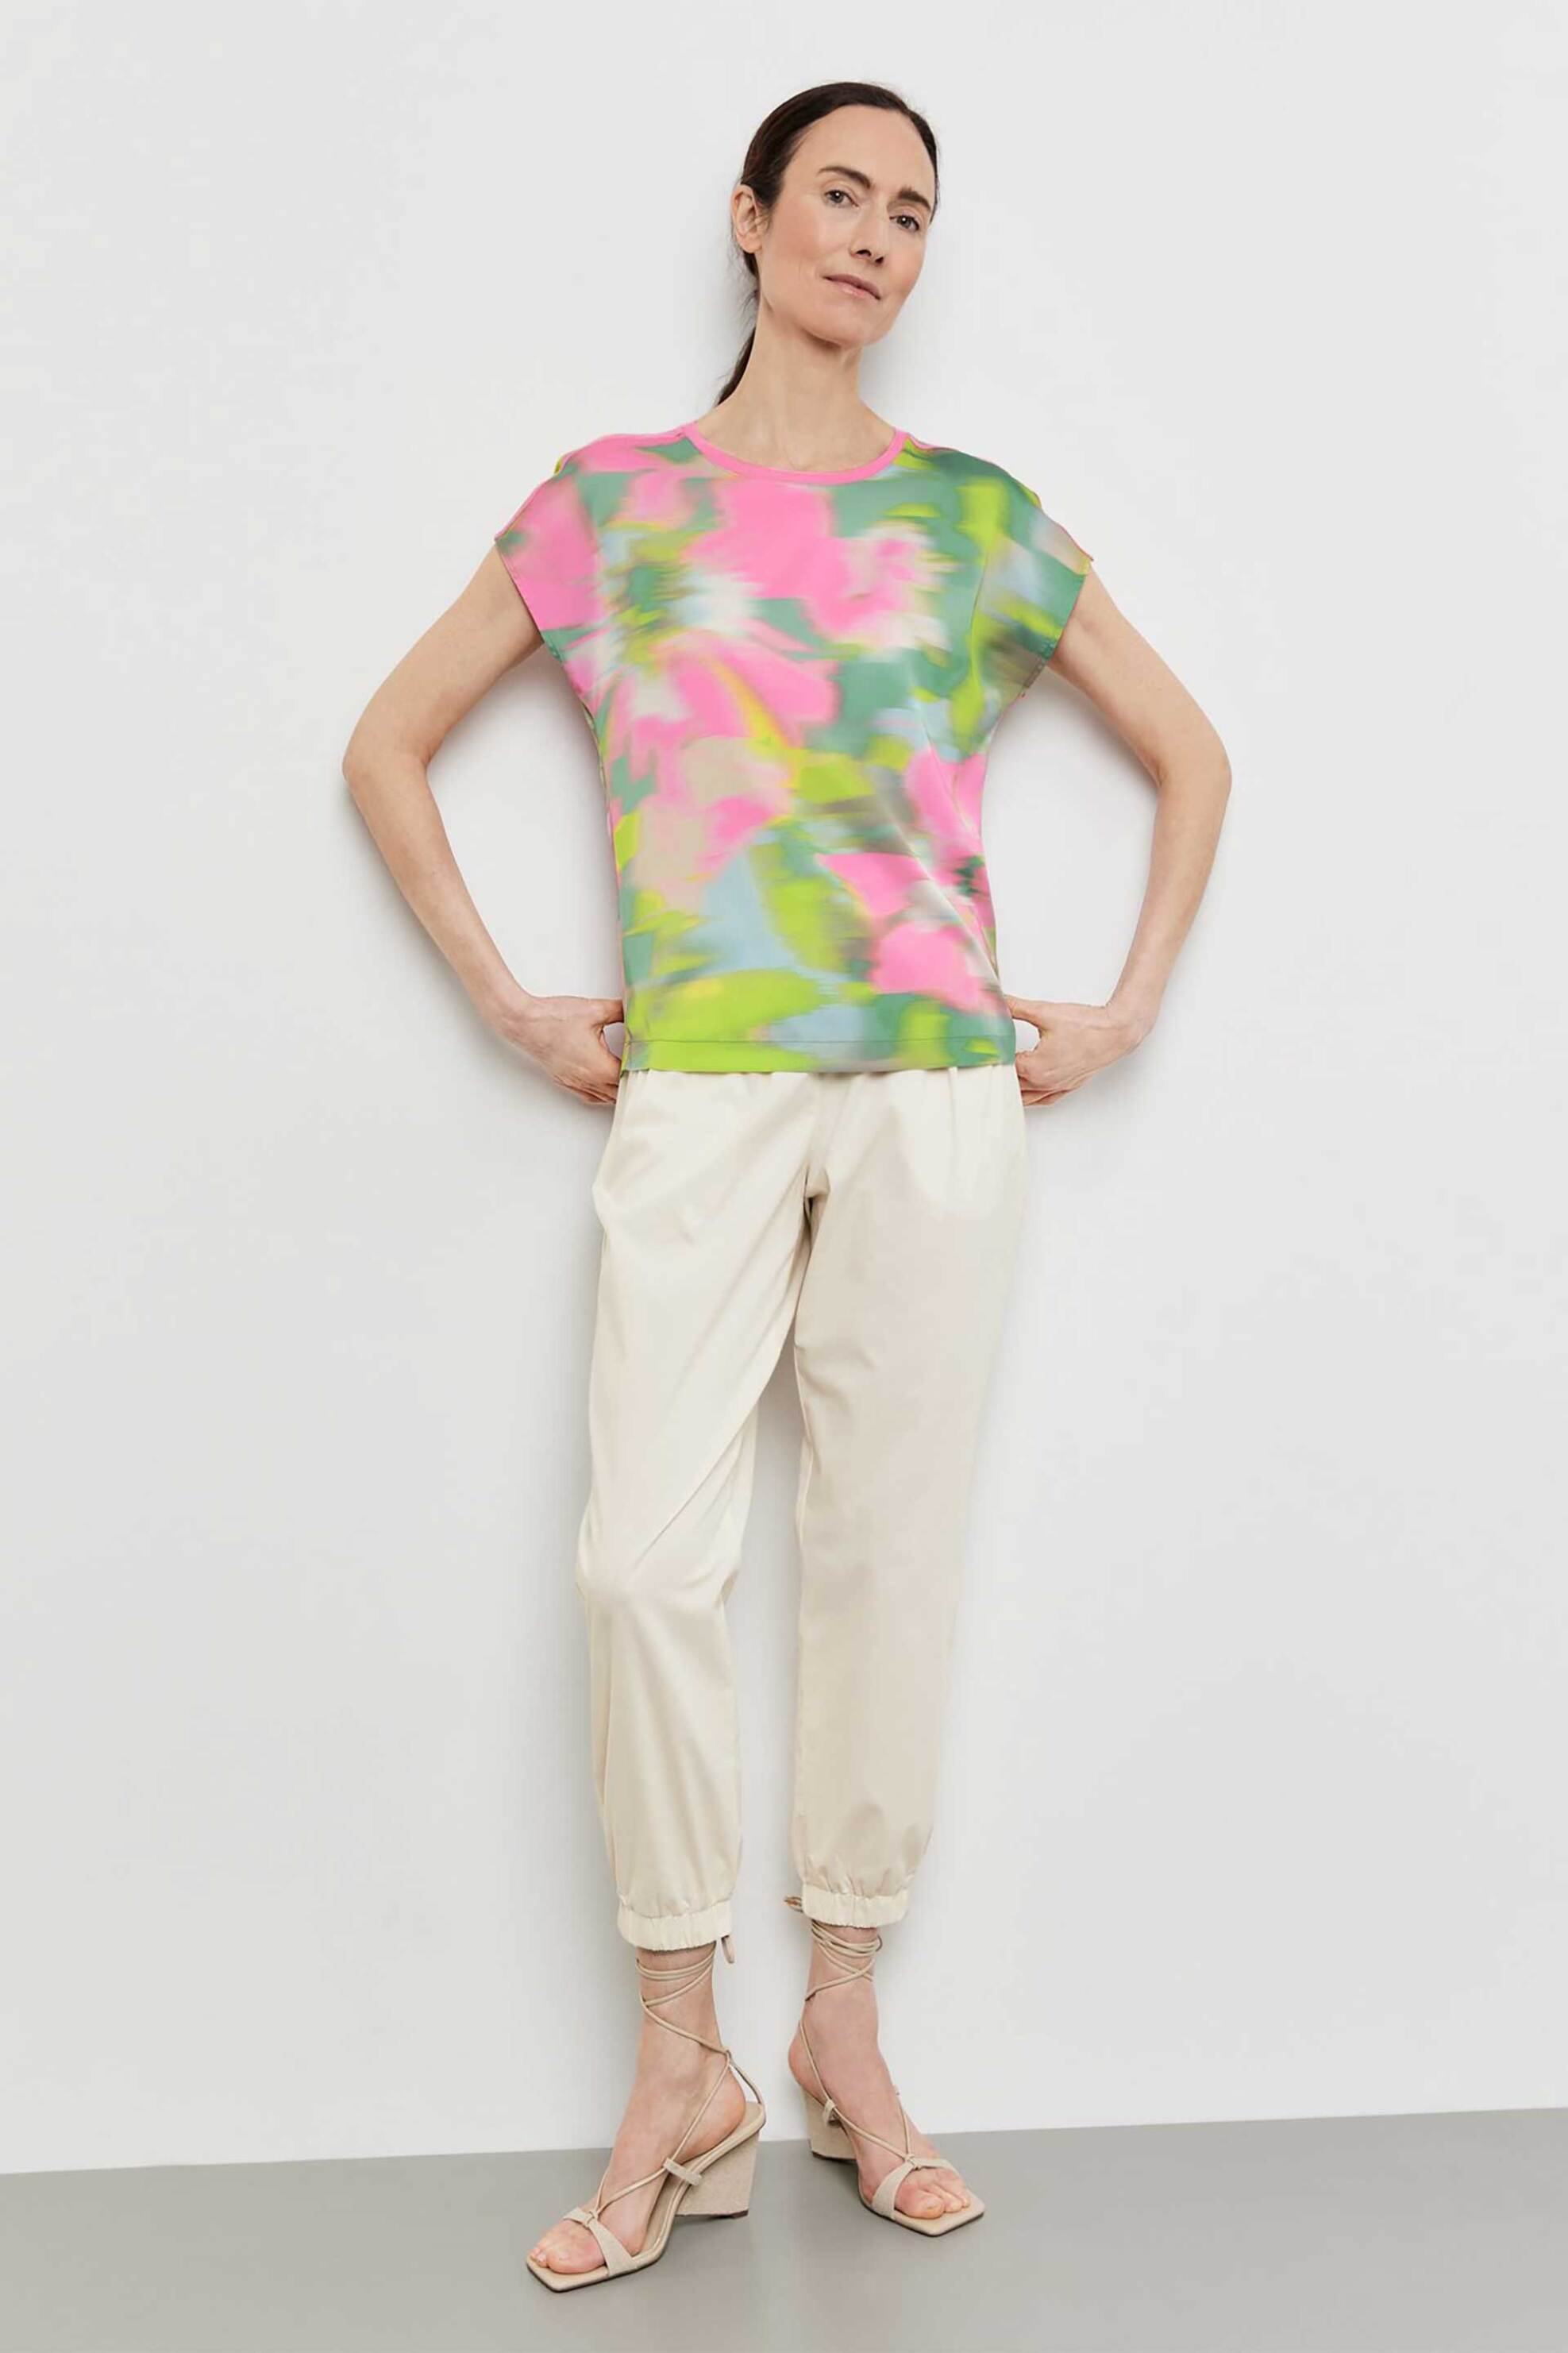 Γυναικεία Ρούχα & Αξεσουάρ > Γυναικεία Ρούχα > Γυναικεία Τοπ > Γυναικεία T-Shirts Gerry Weber γυναικείο T-shirt με colourful print Comfortable Fit - 270037-44002 Πολύχρωμο